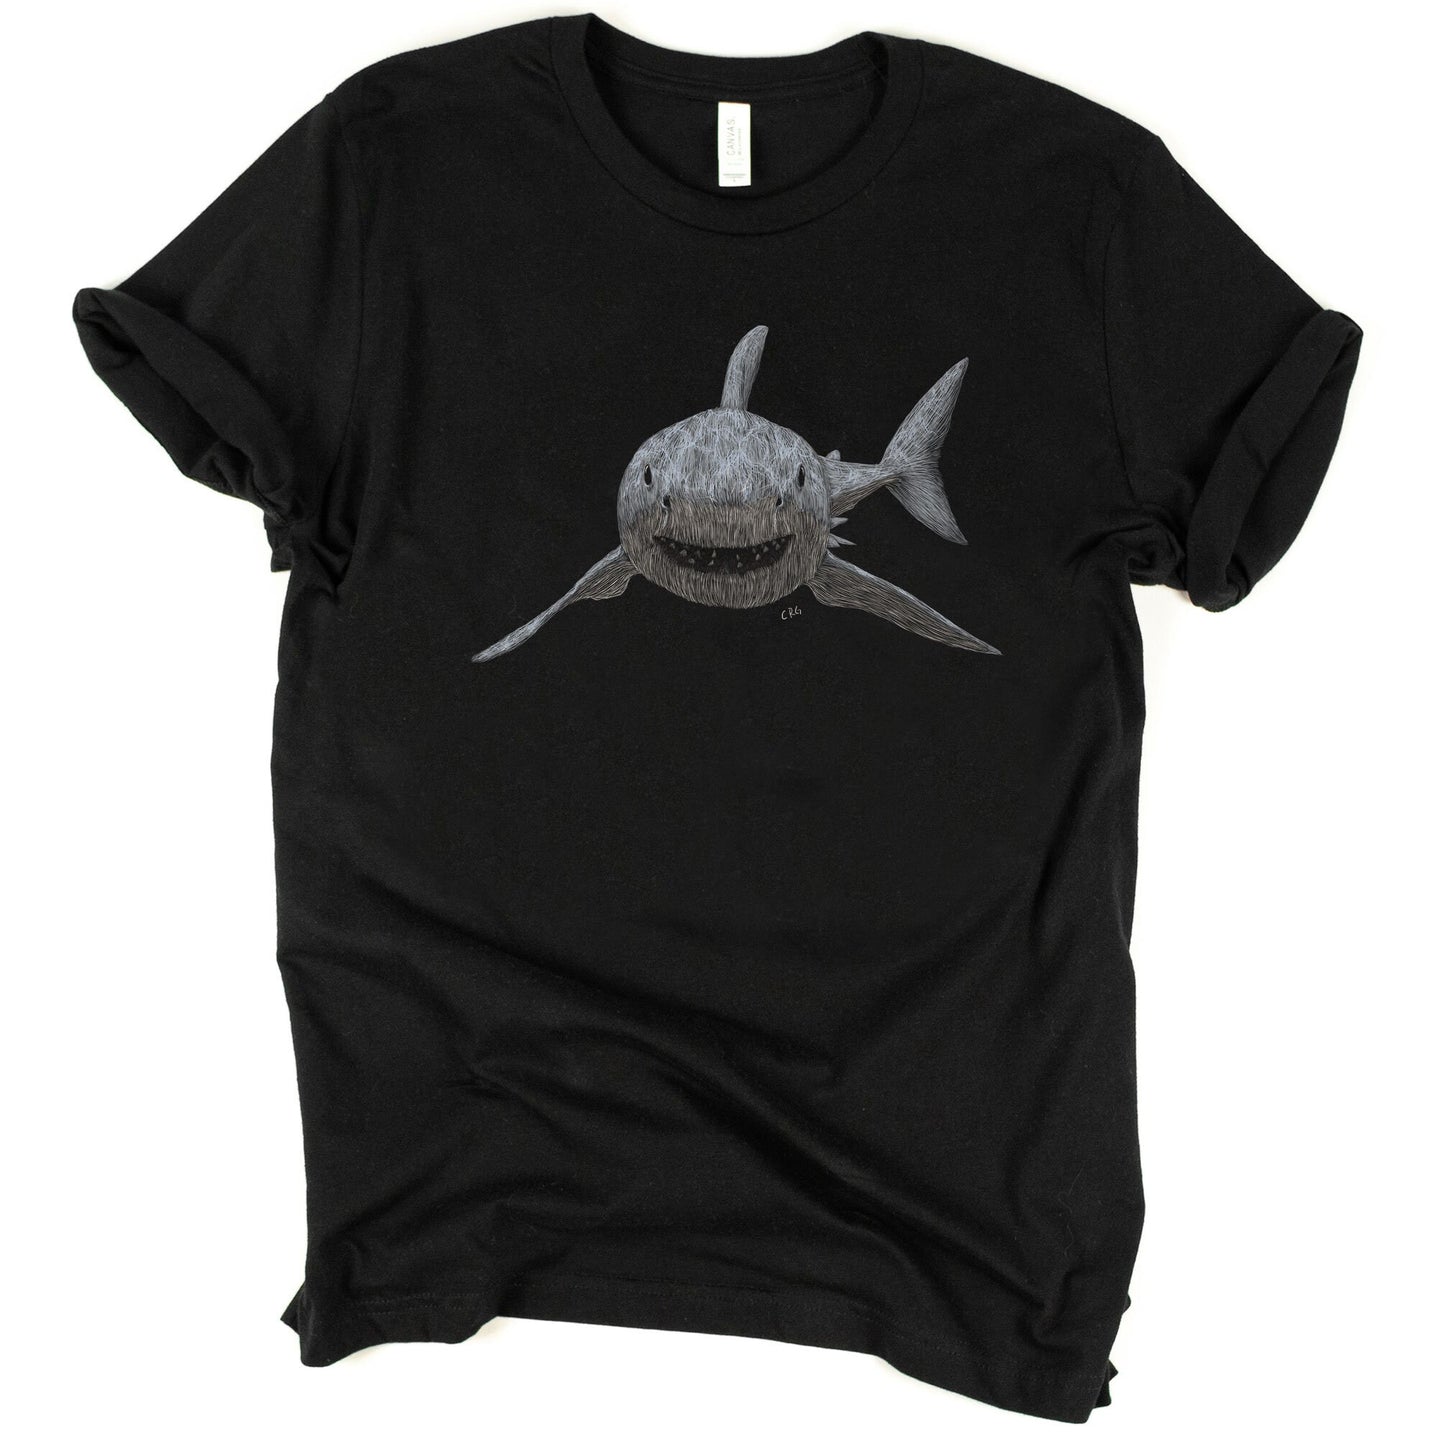 Great White Shark Shirt